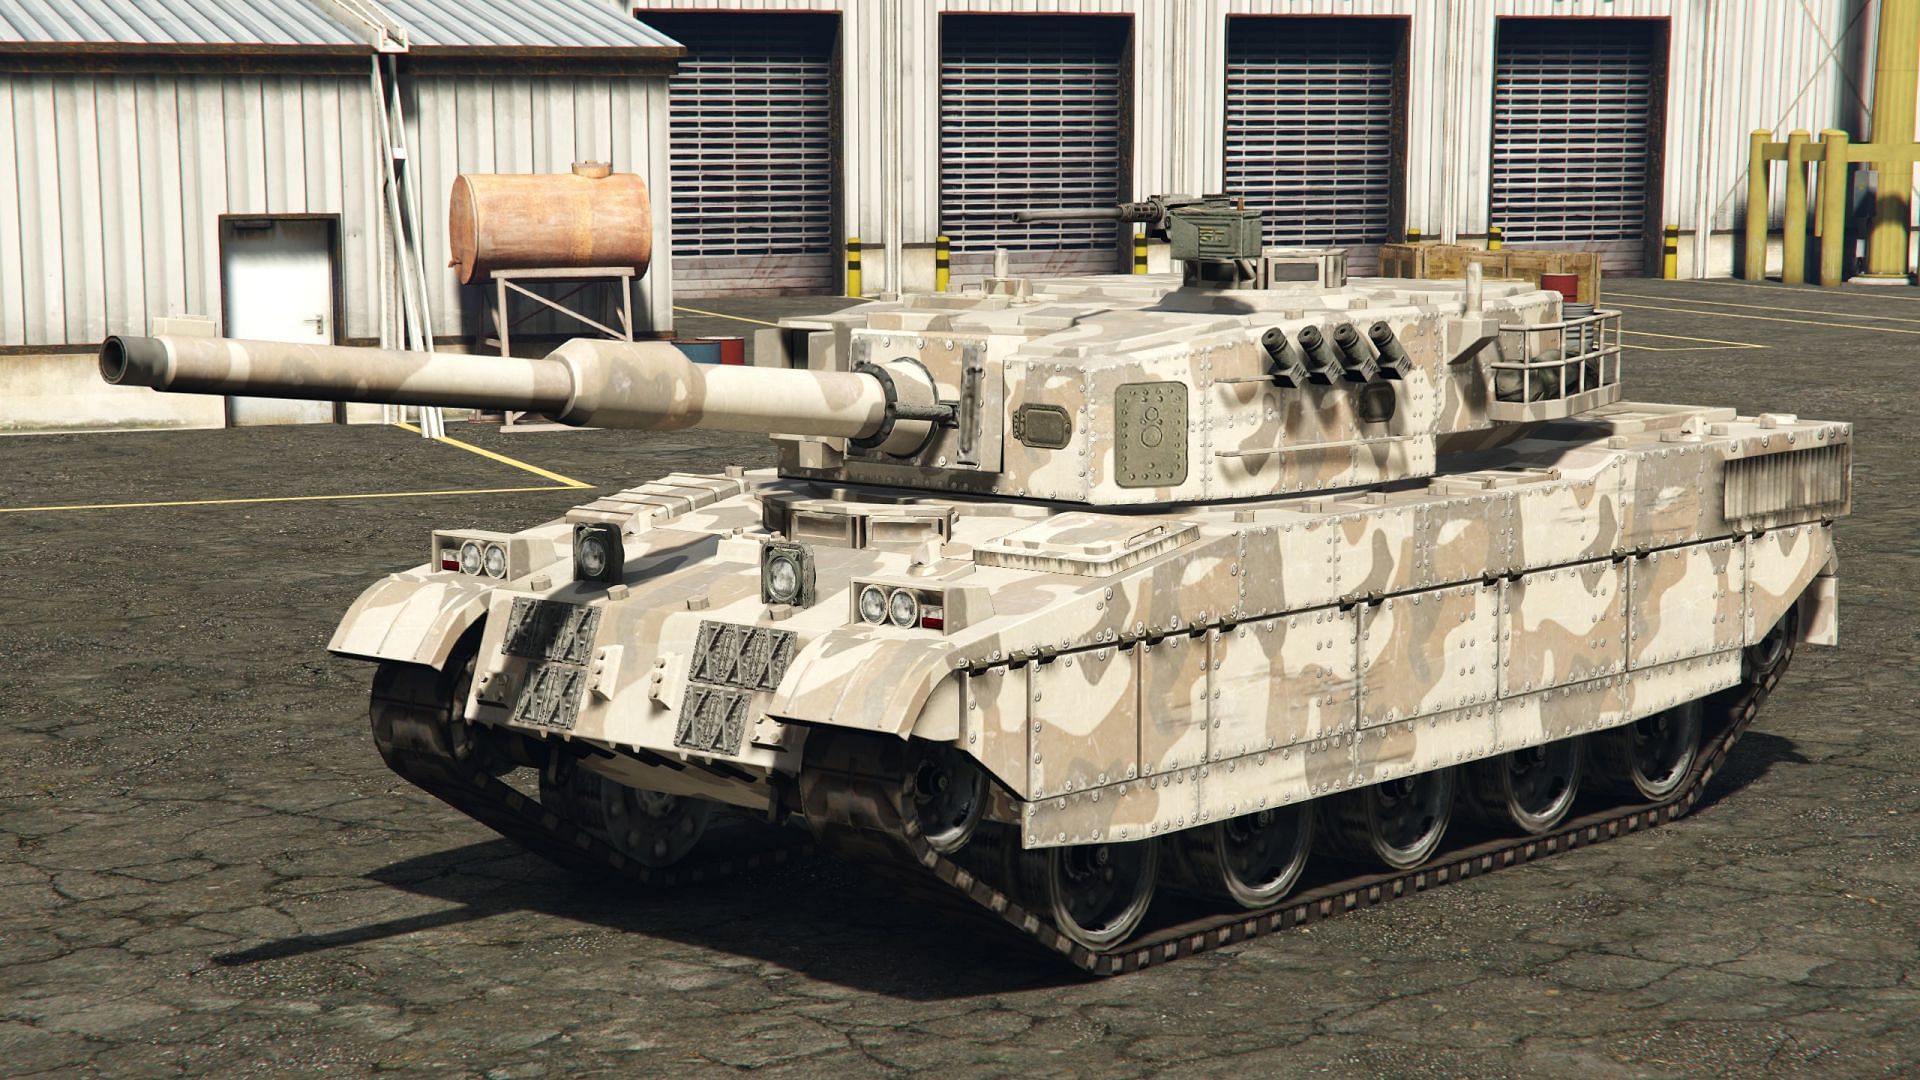 The Rhino Tank in GTA 5 (Image via GTA Wiki)